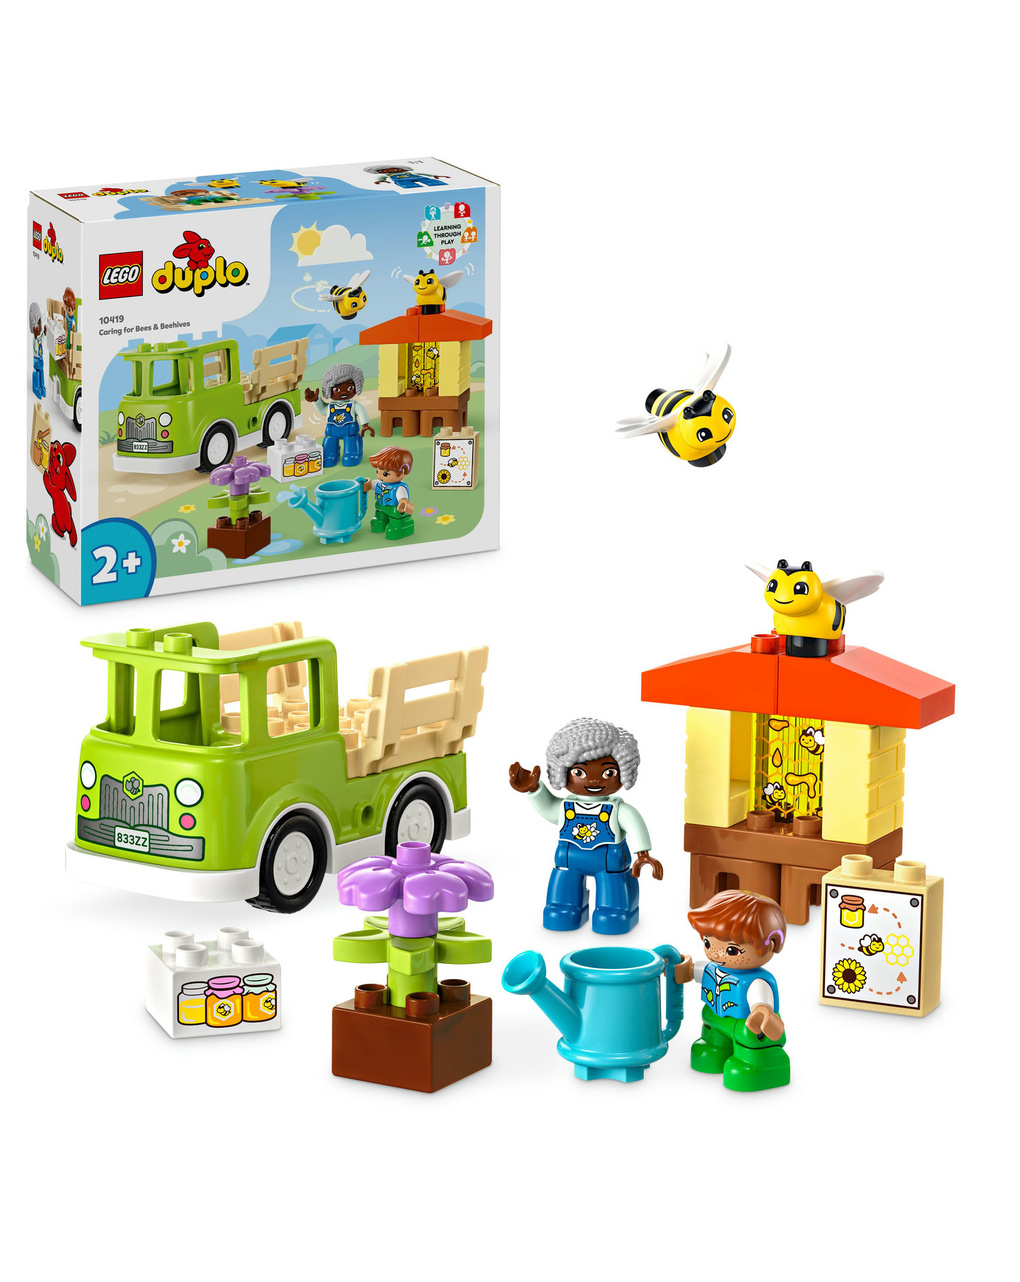 Camion giocattolo cura di api e alveari - 10419 - lego duplo